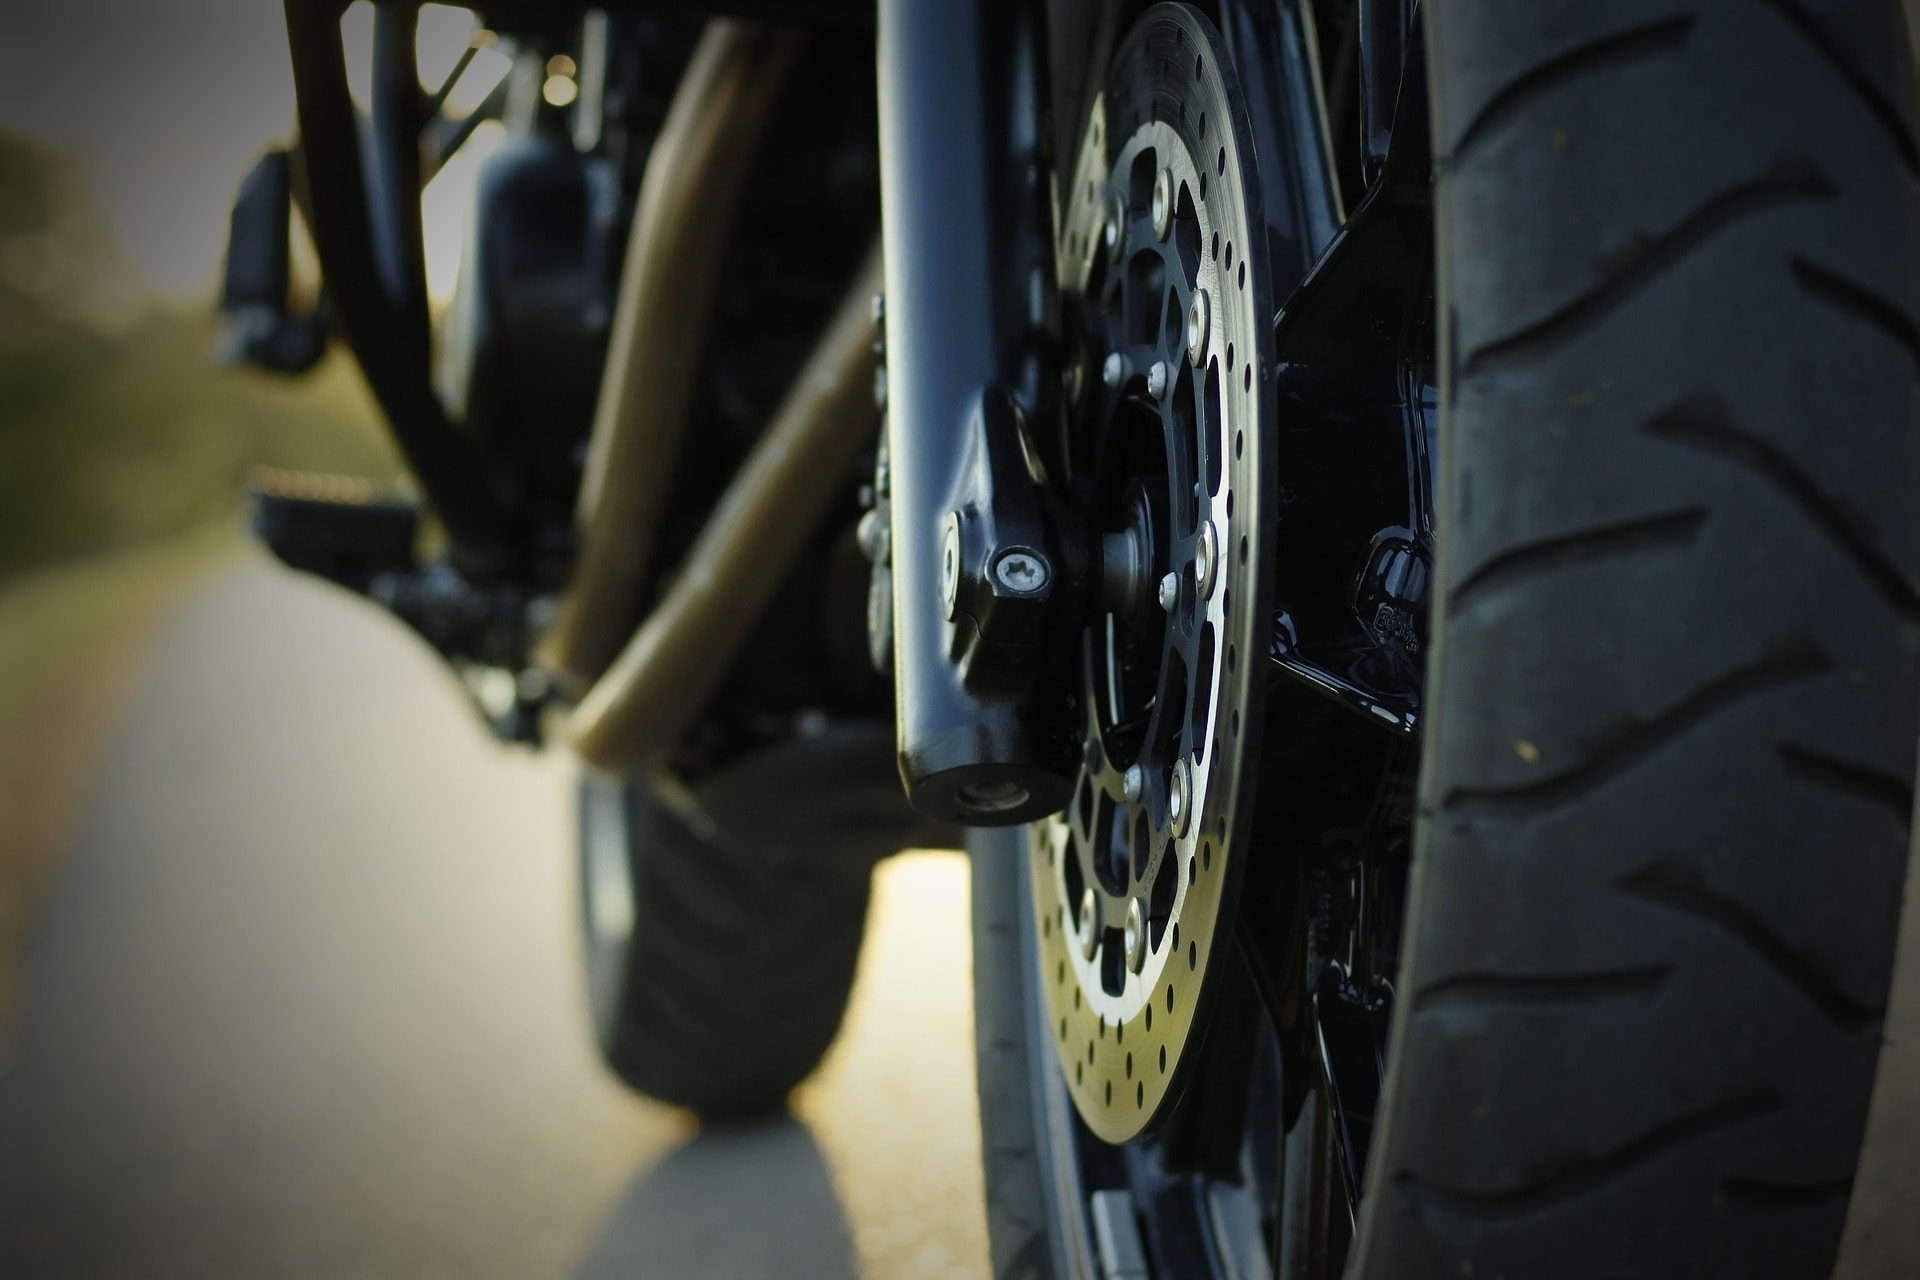 Vue de pneu d'une motocyclette. Qui prend plus de distance de freinage?